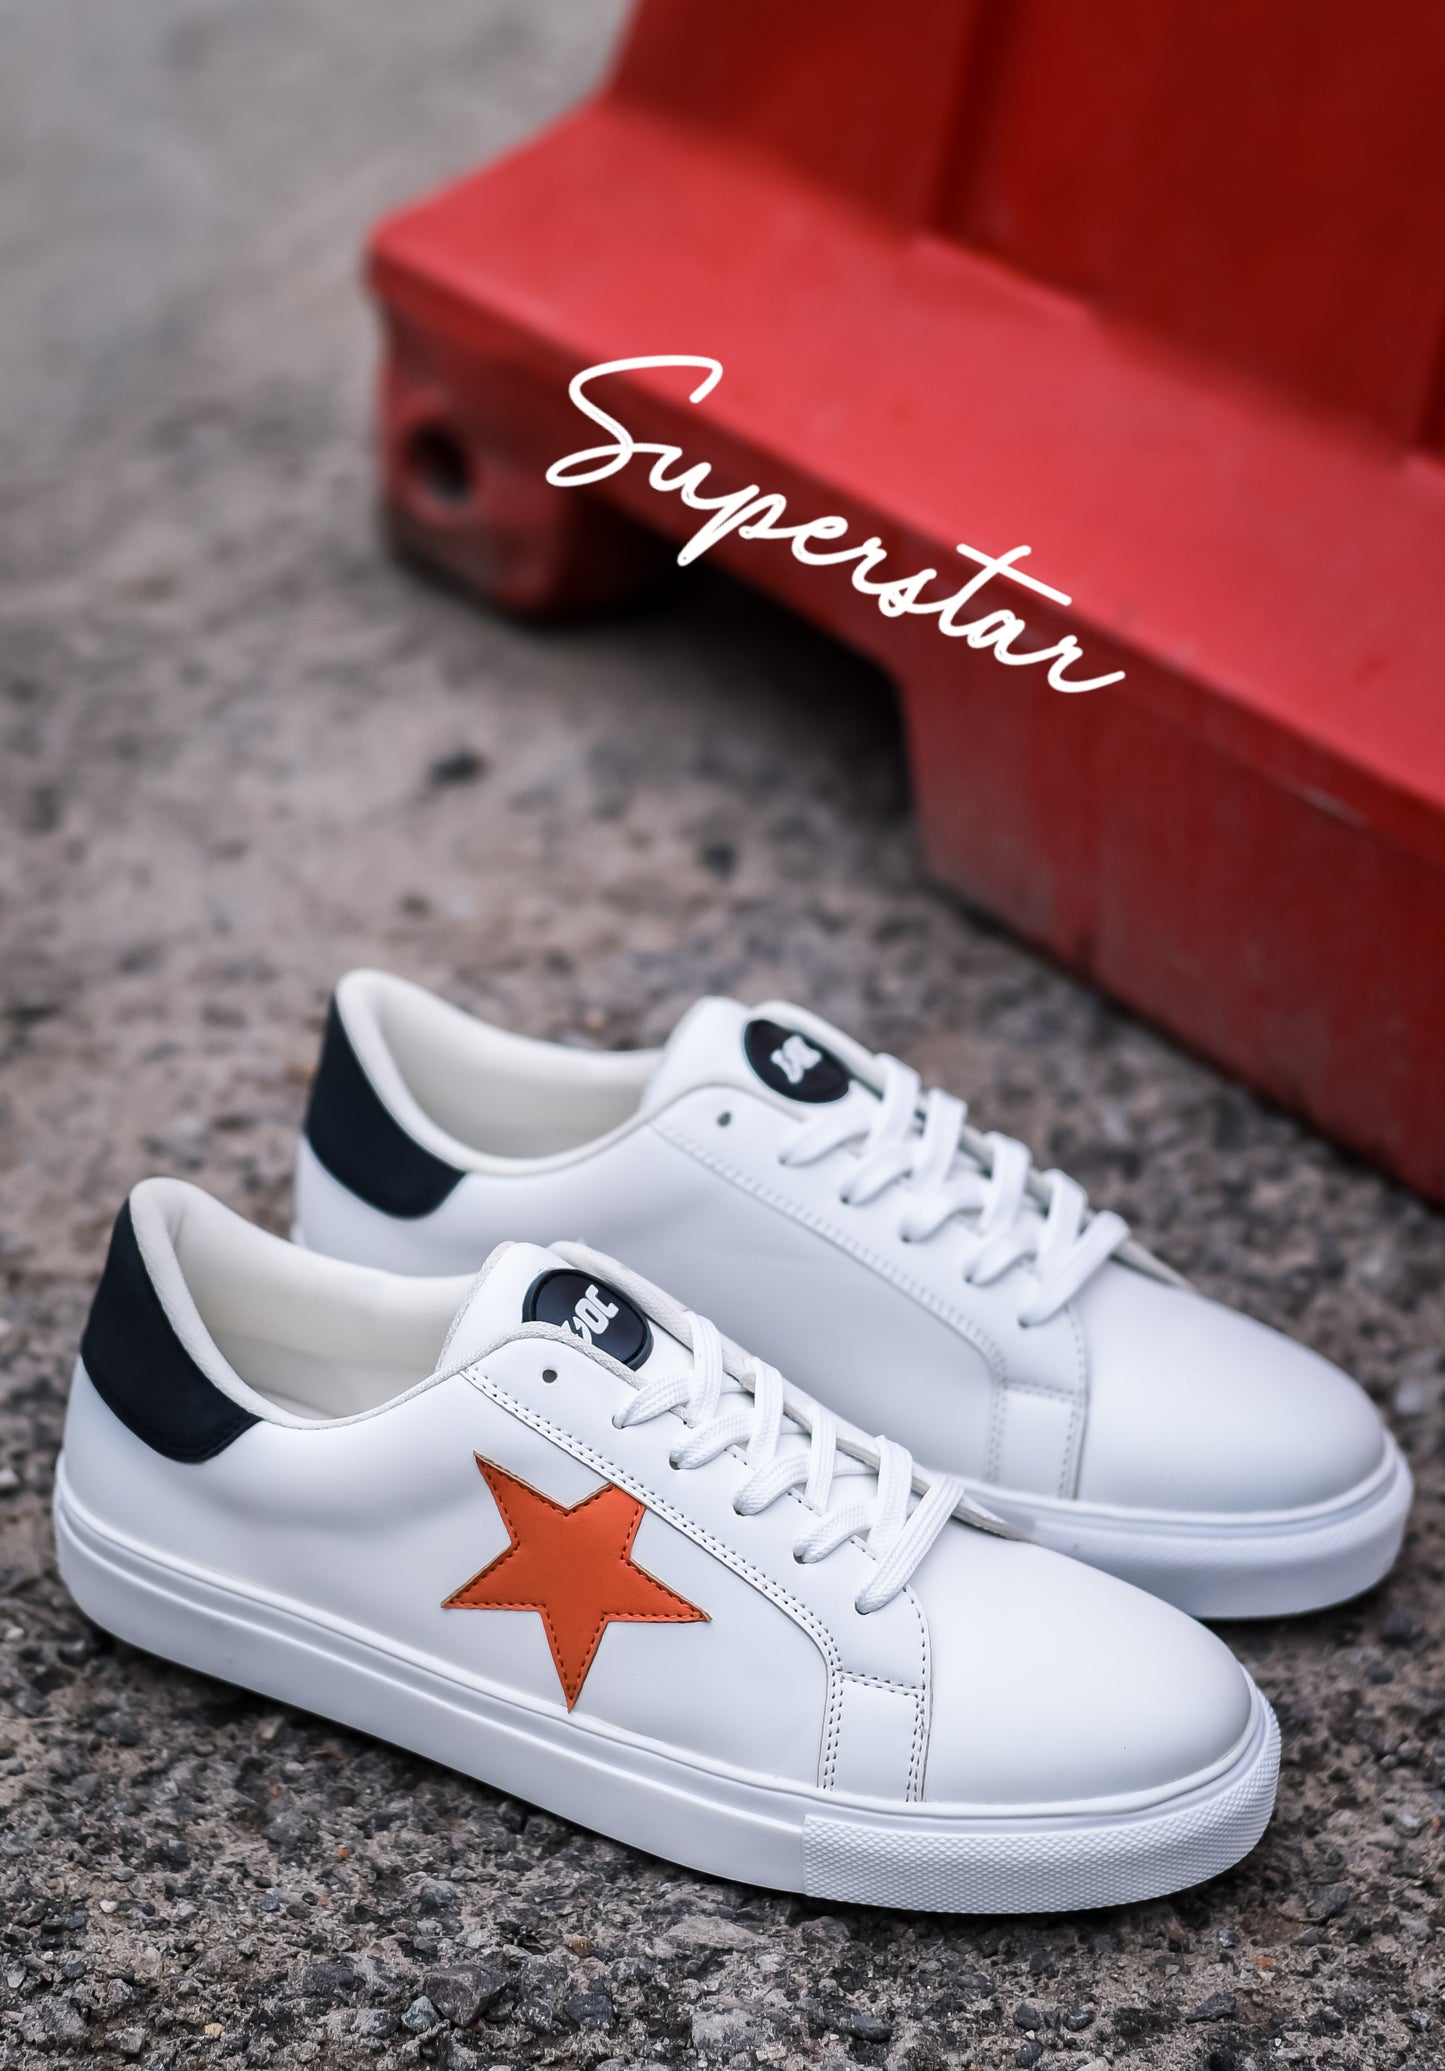 Superstar LT / White Orange